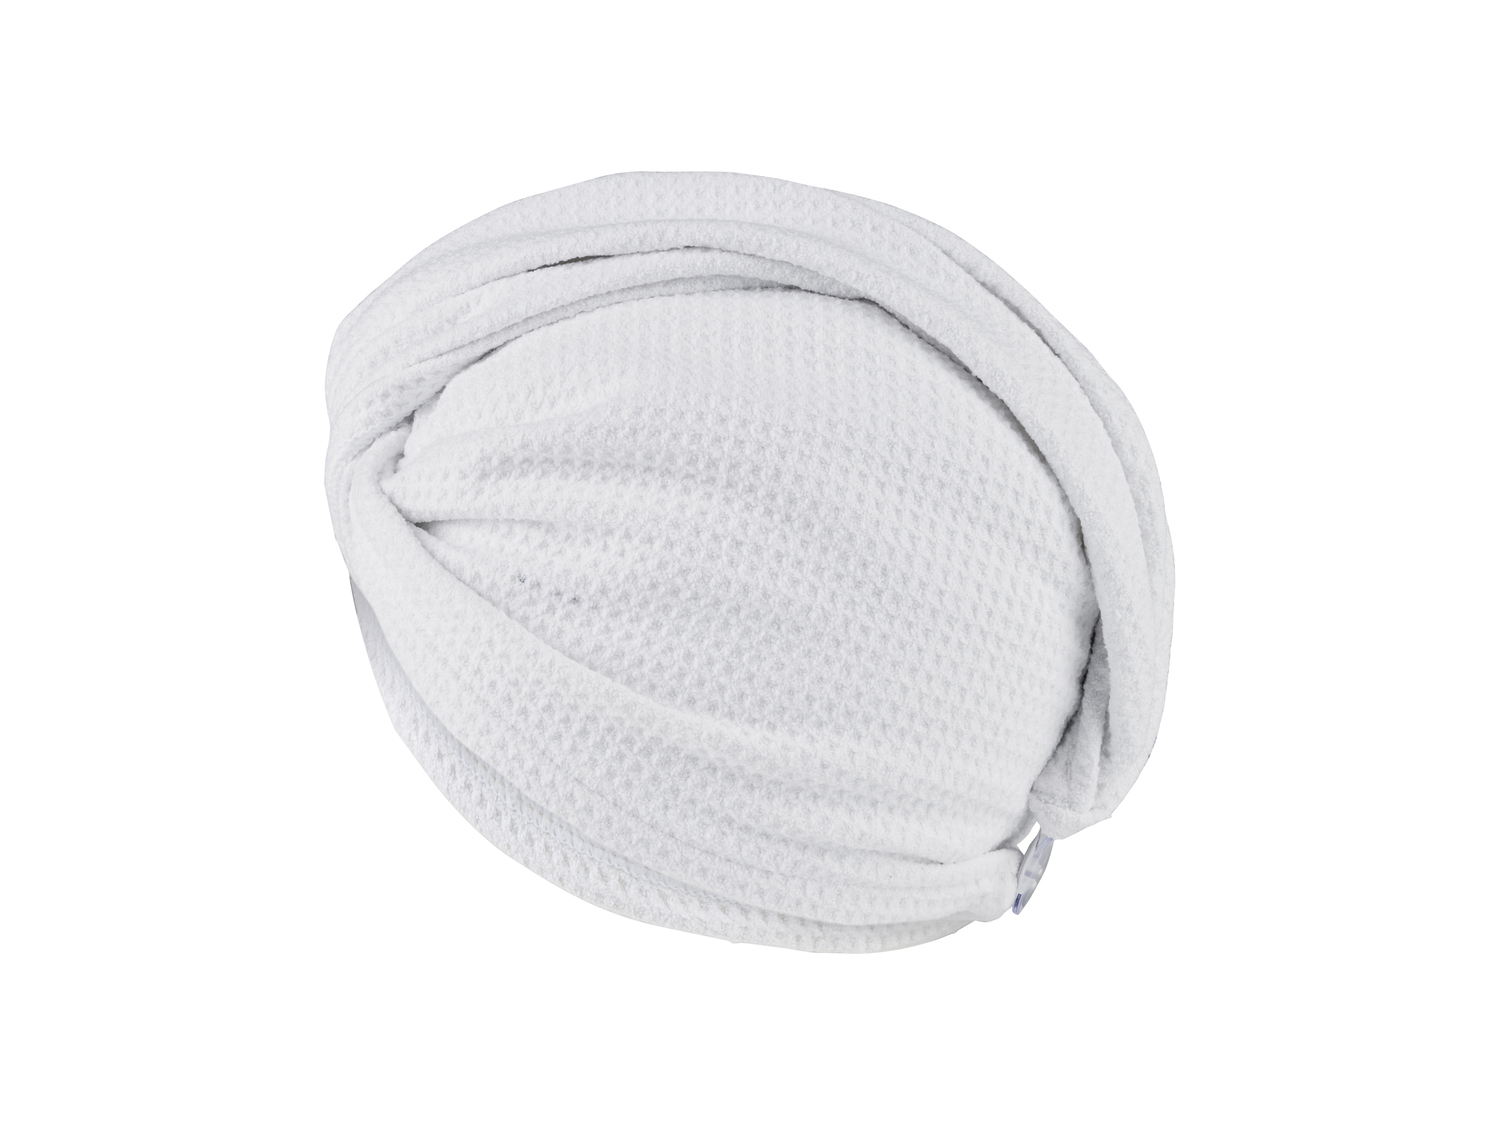 Asciugamano a turbante per capelli Oeko-tex, prezzo 3.99 &#8364;  

Caratteristiche